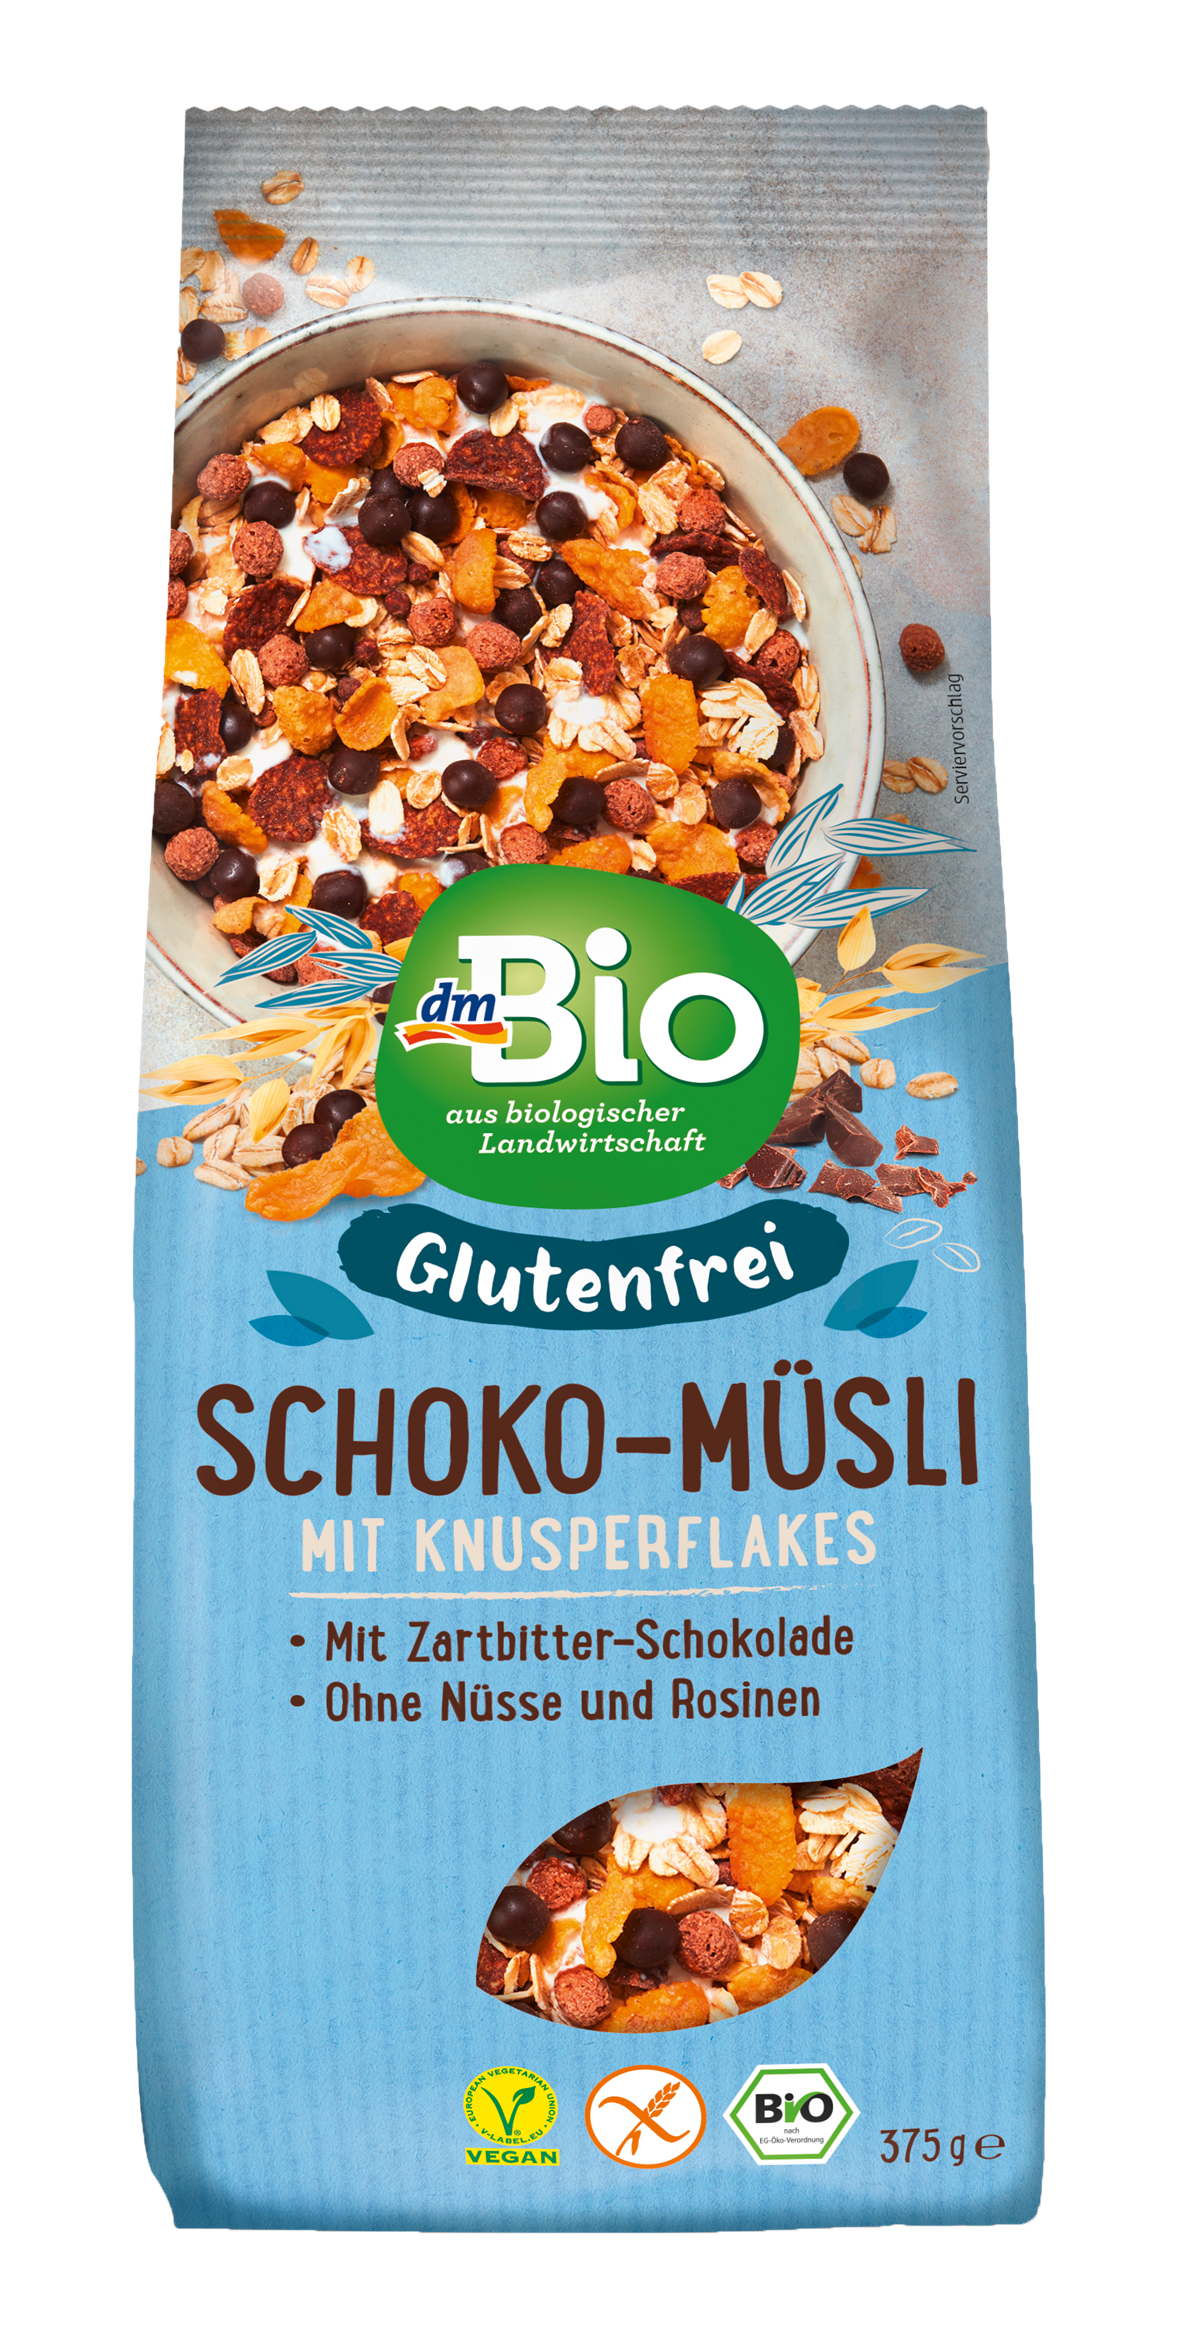 dmBio glutenfreies Schoko-Müsli (375 g): 2,95 €